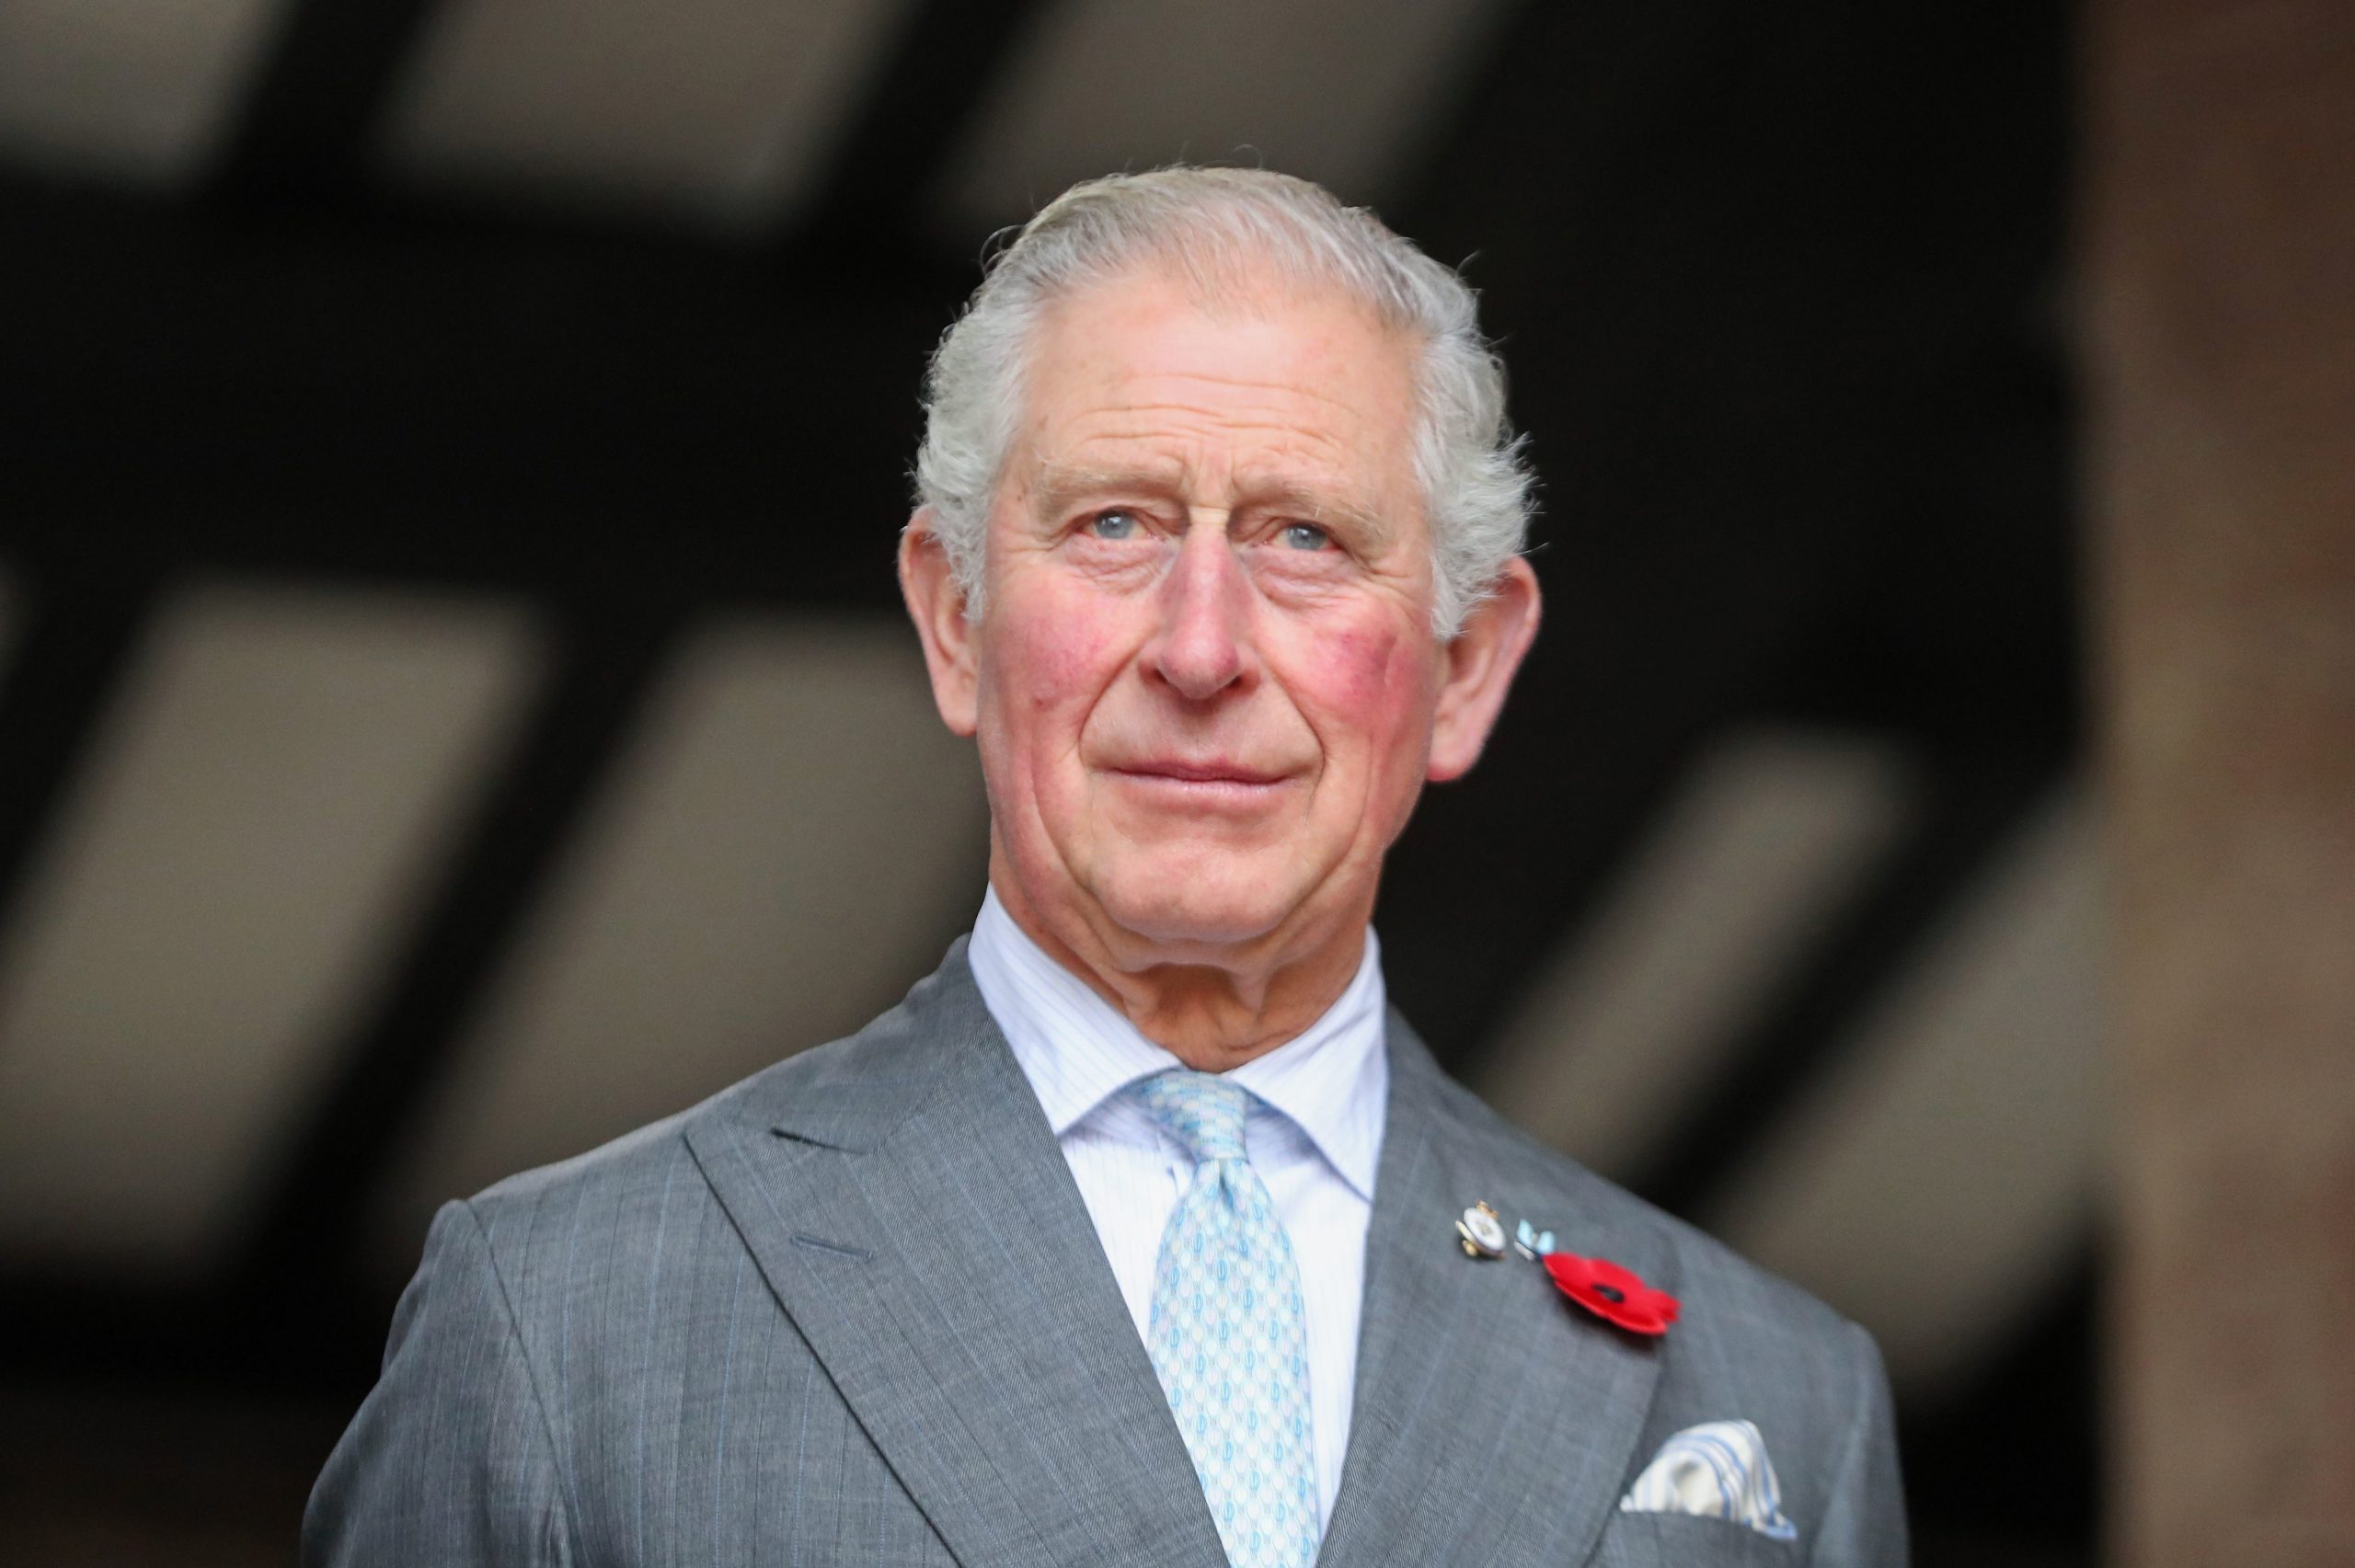 Принц Чарльз официально будет провозглашен королем Карлом III 10 сентября